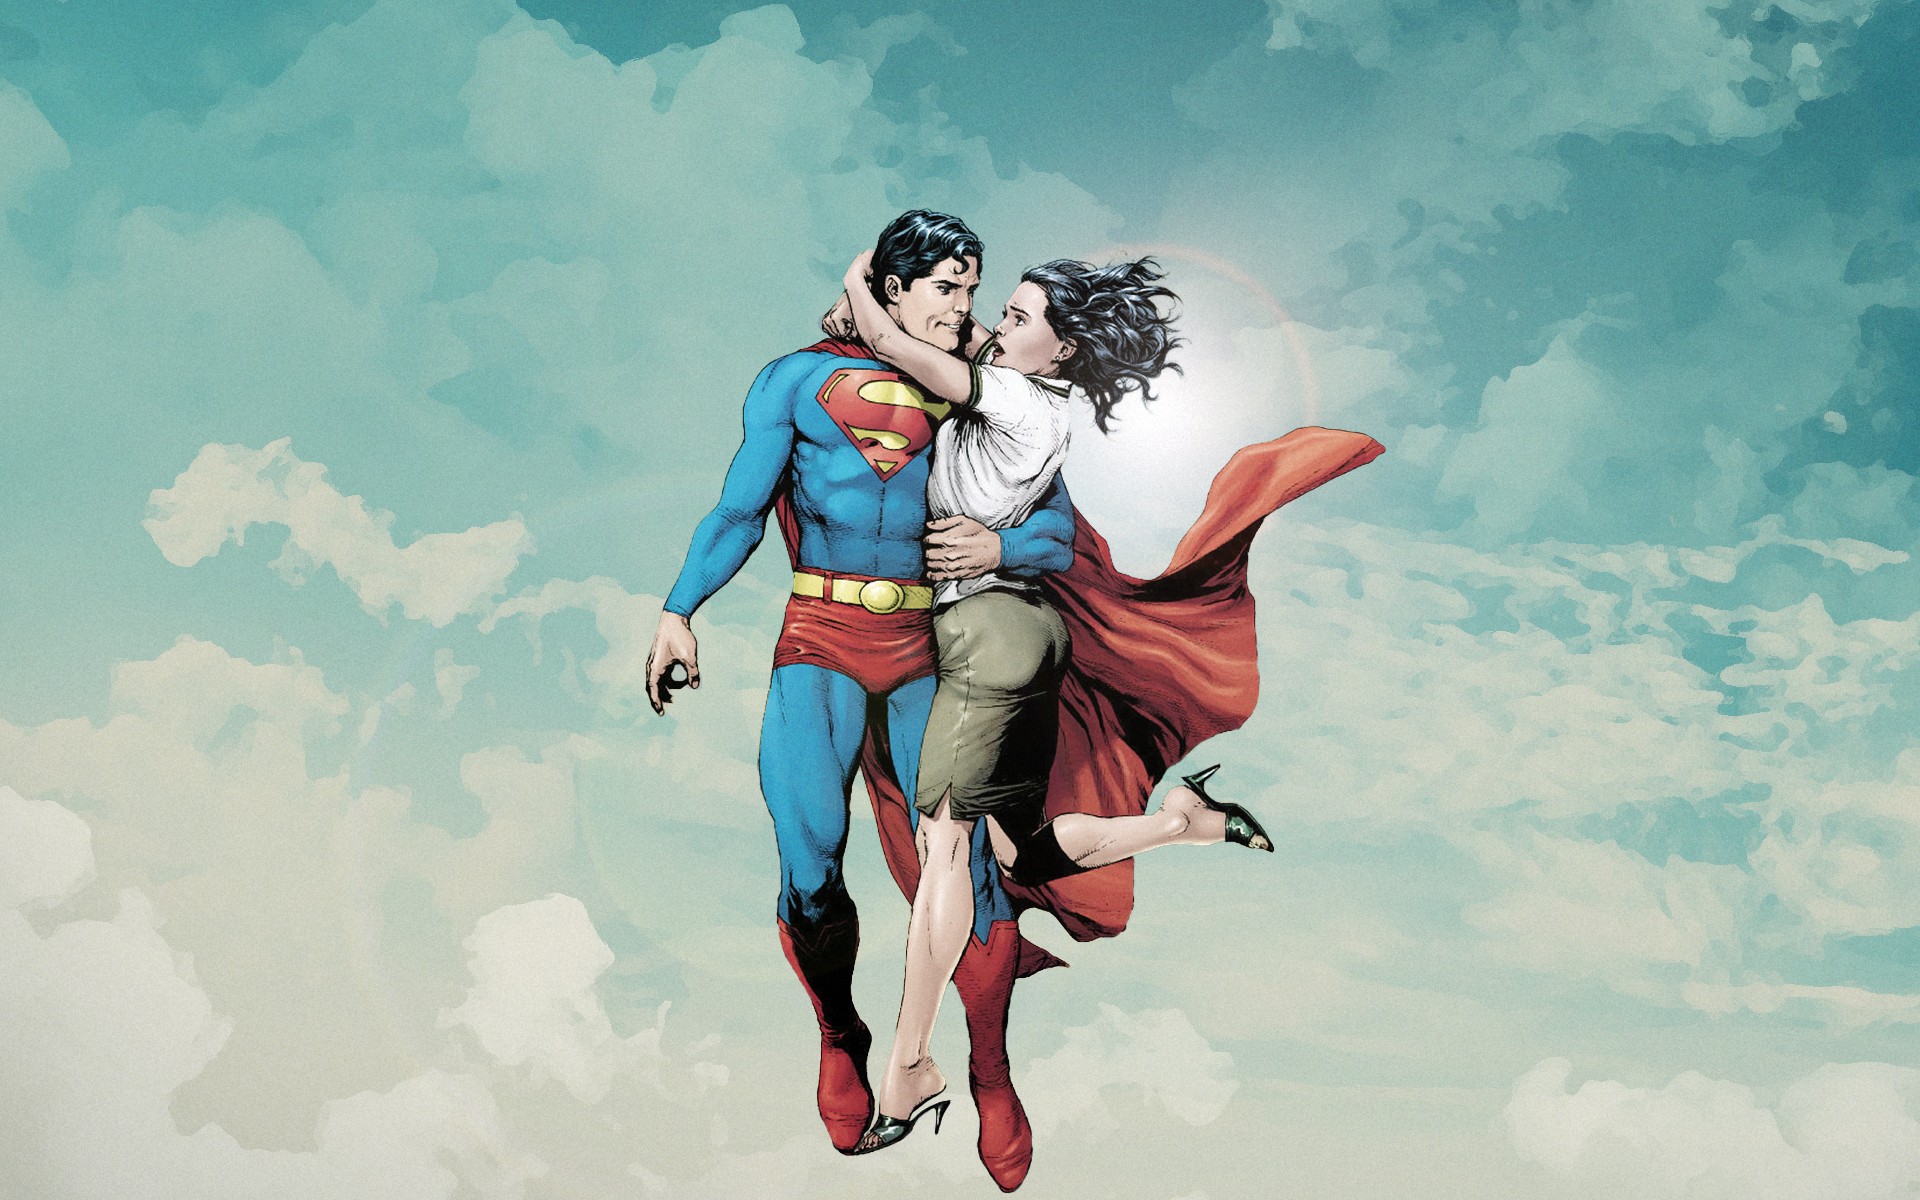 General 1920x1200 comic art Superman sky artwork superhero